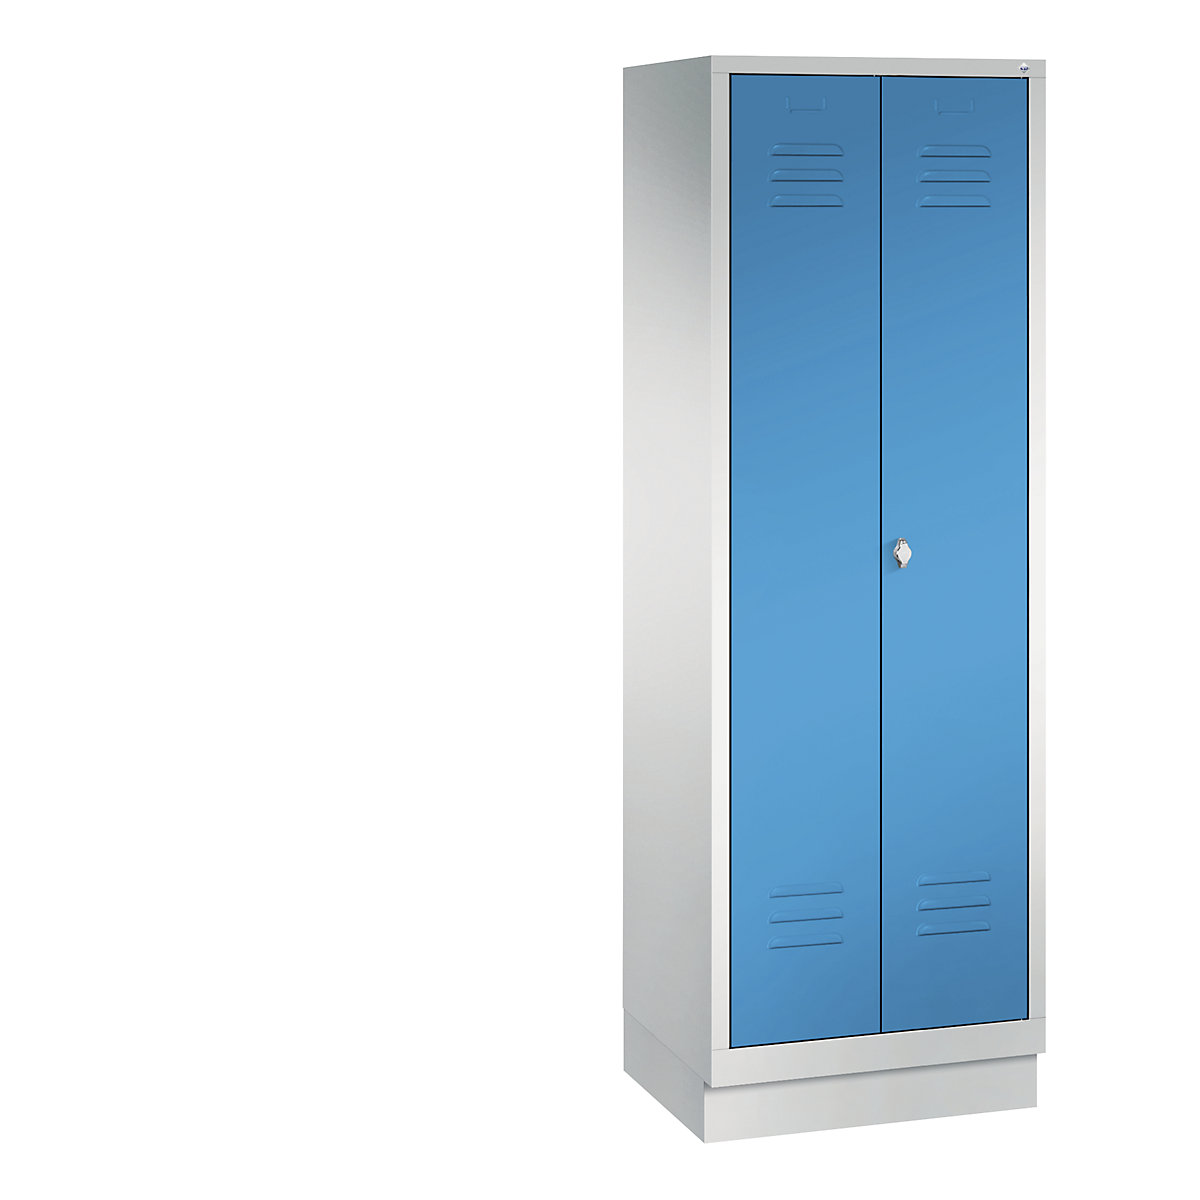 CLASSIC omara za pripomočke s podnožjem – C+P, 2 predelka, širina 300 mm/predelek, svetlo sive / svetlo modre barve-6